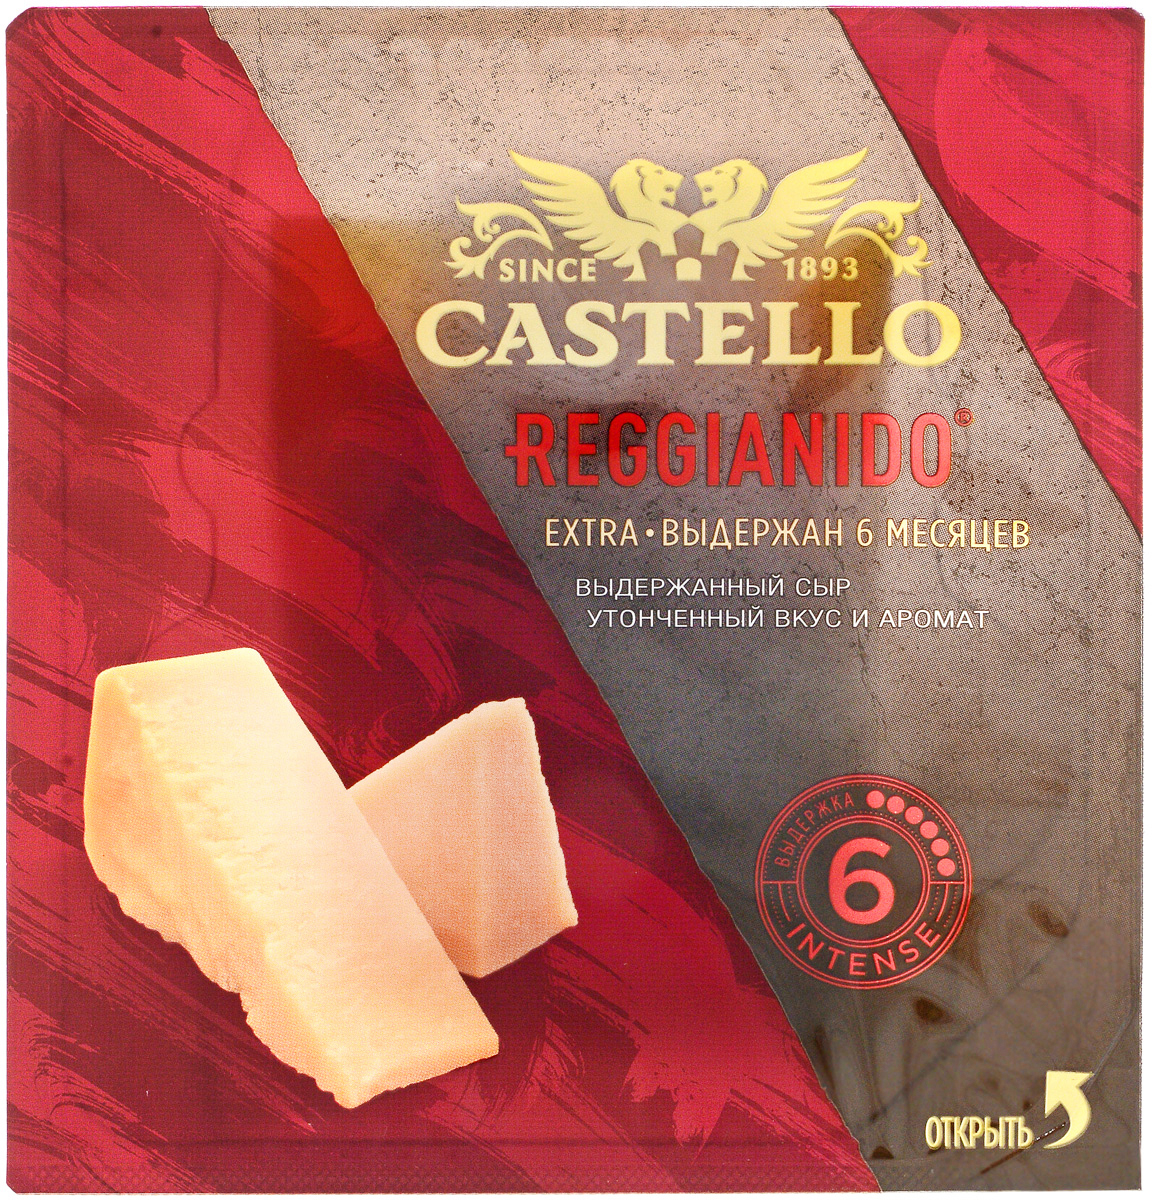 Castello Reggianido Сыр Пармезан выдержка 6 мес, 33%, 150 г